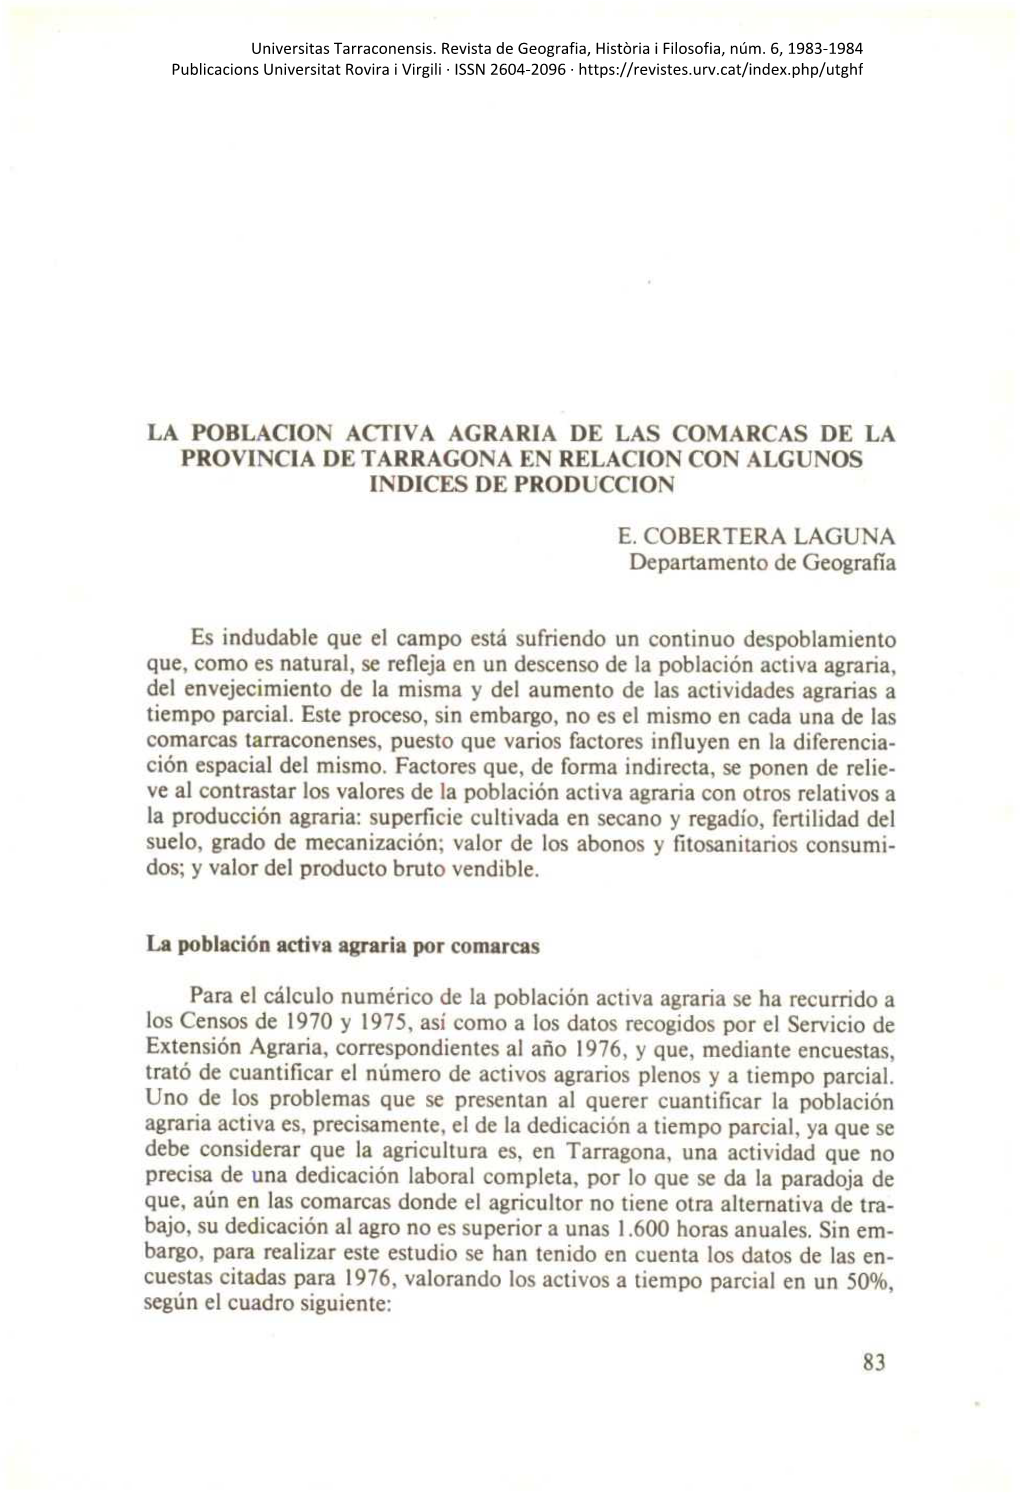 La Poblacion Activa Agraria De Las Comarcas De La Provincia De Tarragona En Relacion Con Algunos Indices De Produccion